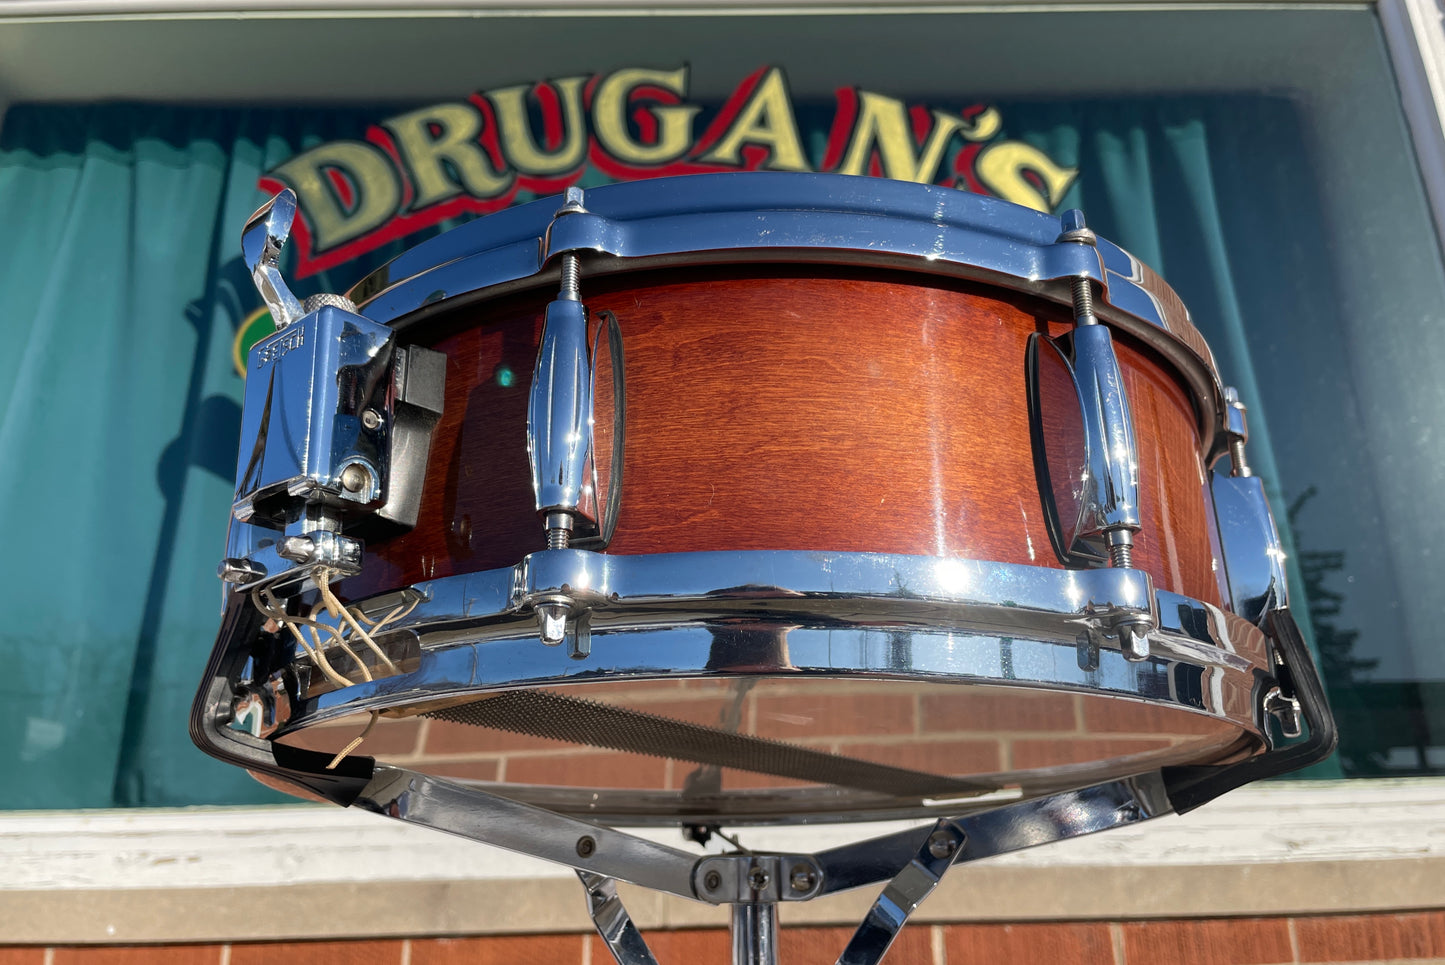 Gretsch Renown 5x14 Snare Drum Sunburst